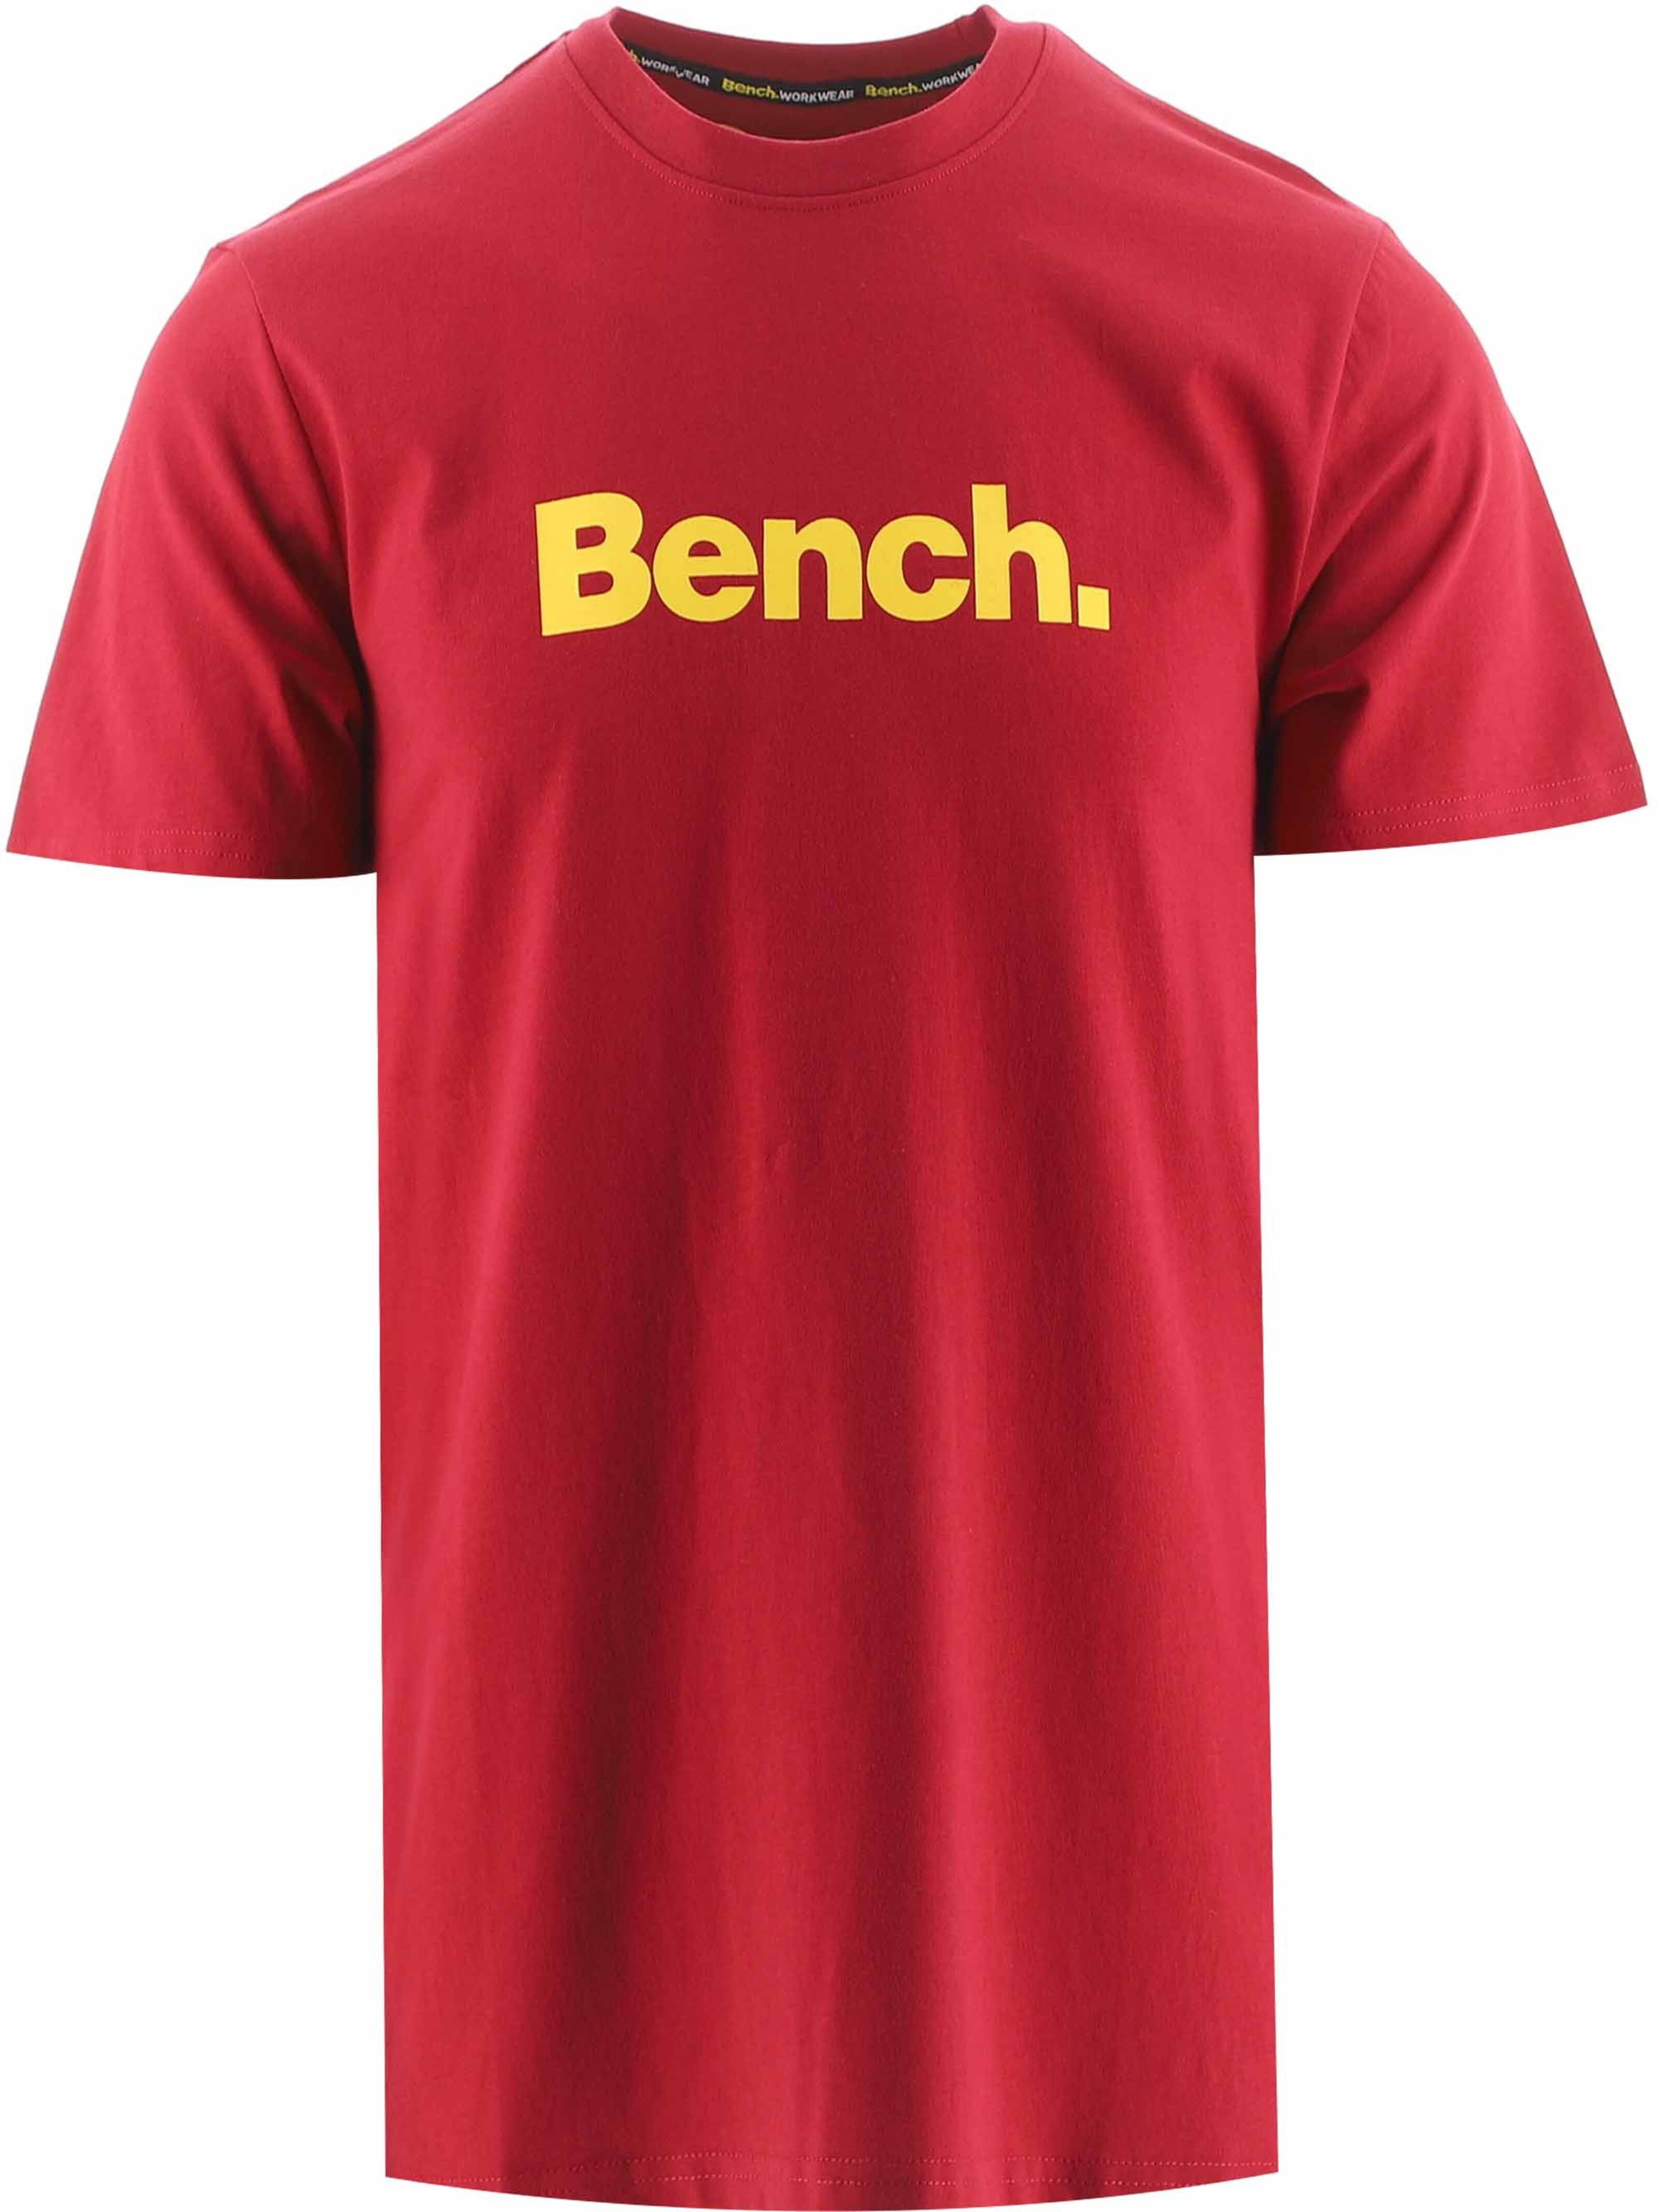 Kaufen Sie Bank-rotes Großhandelspreisen zu Cornwall-T-Shirt